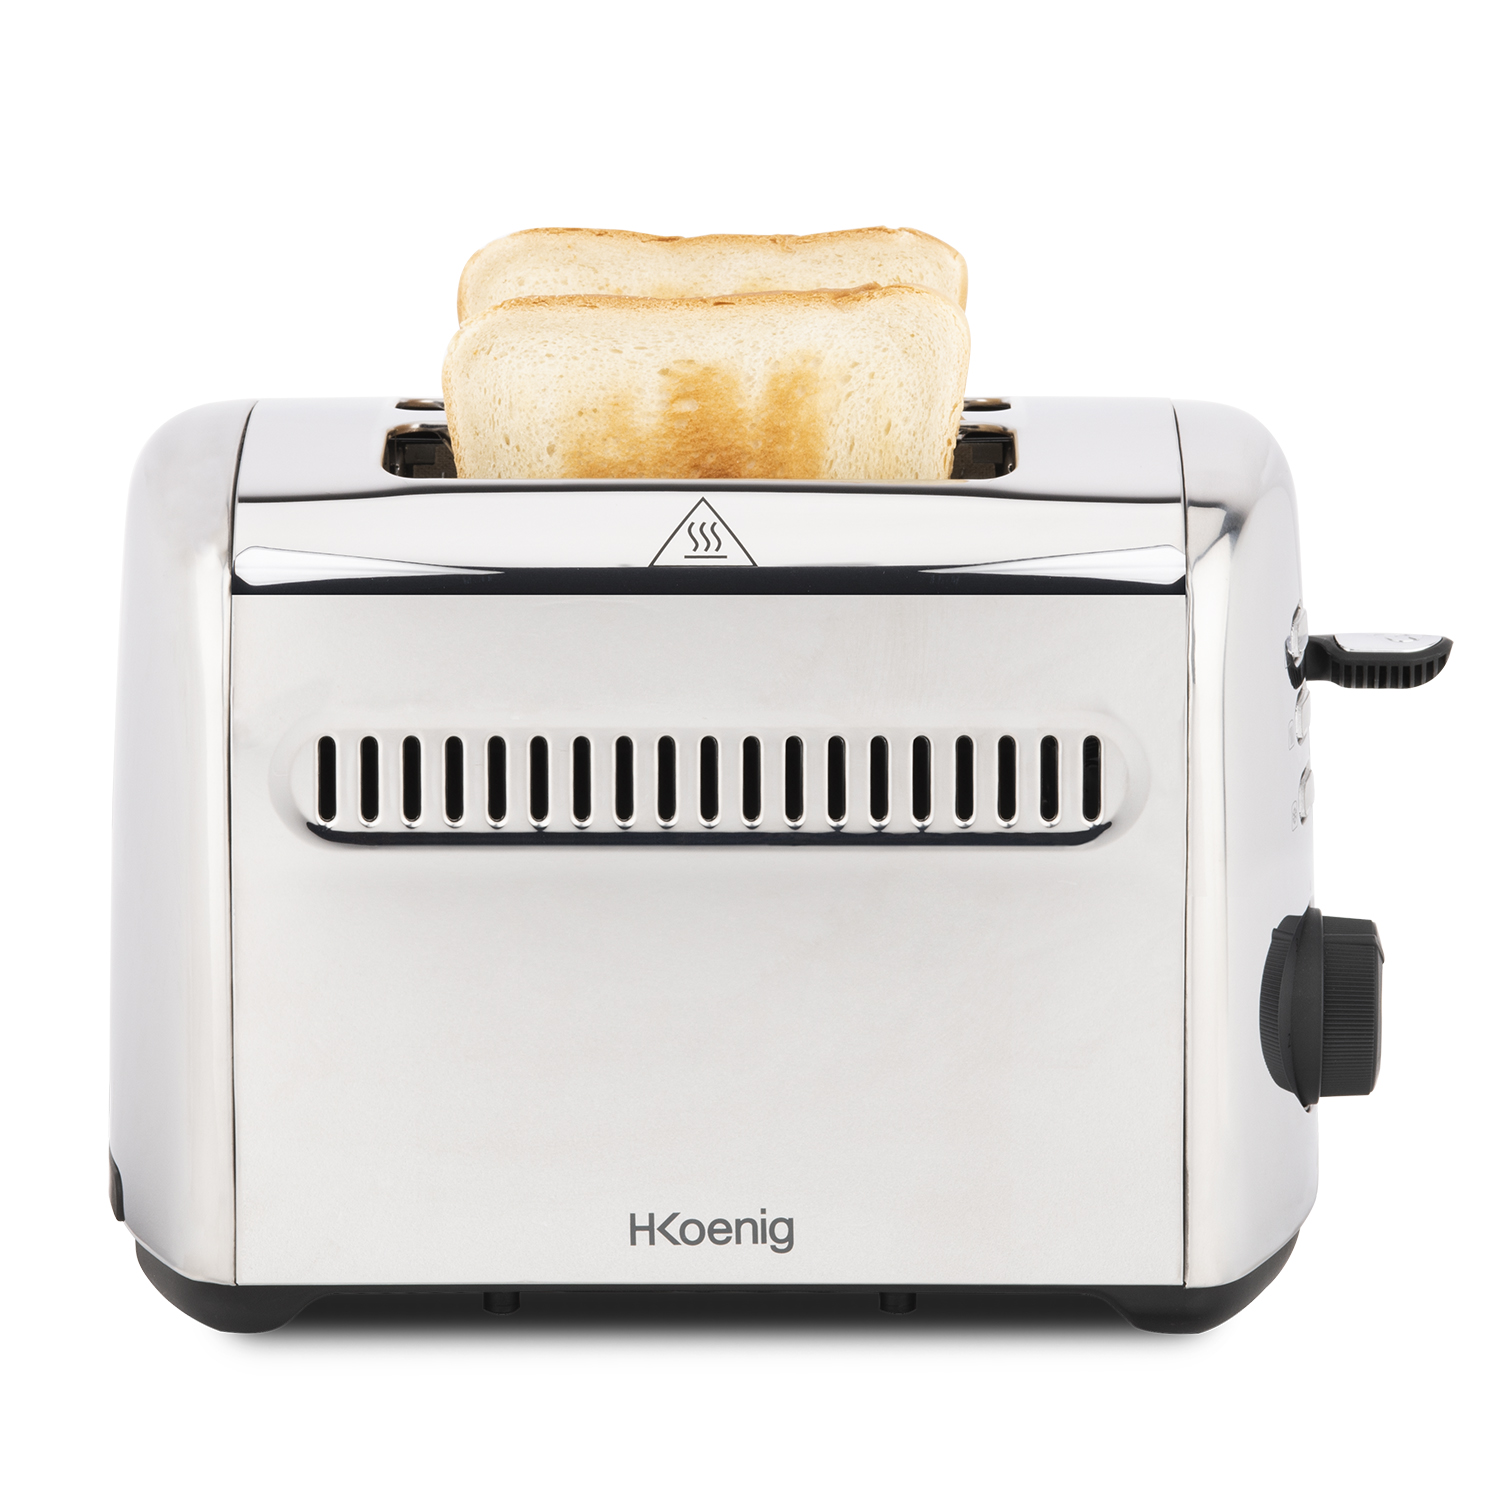 H.KOENIG H.Koenig Toaster TOS9 Silber Bräunung 2) (950 Toaster Krümelfach Watt, Funktionen Scheiben / Stufen / / Edelstahl 2 3 7 / Schlitze: 